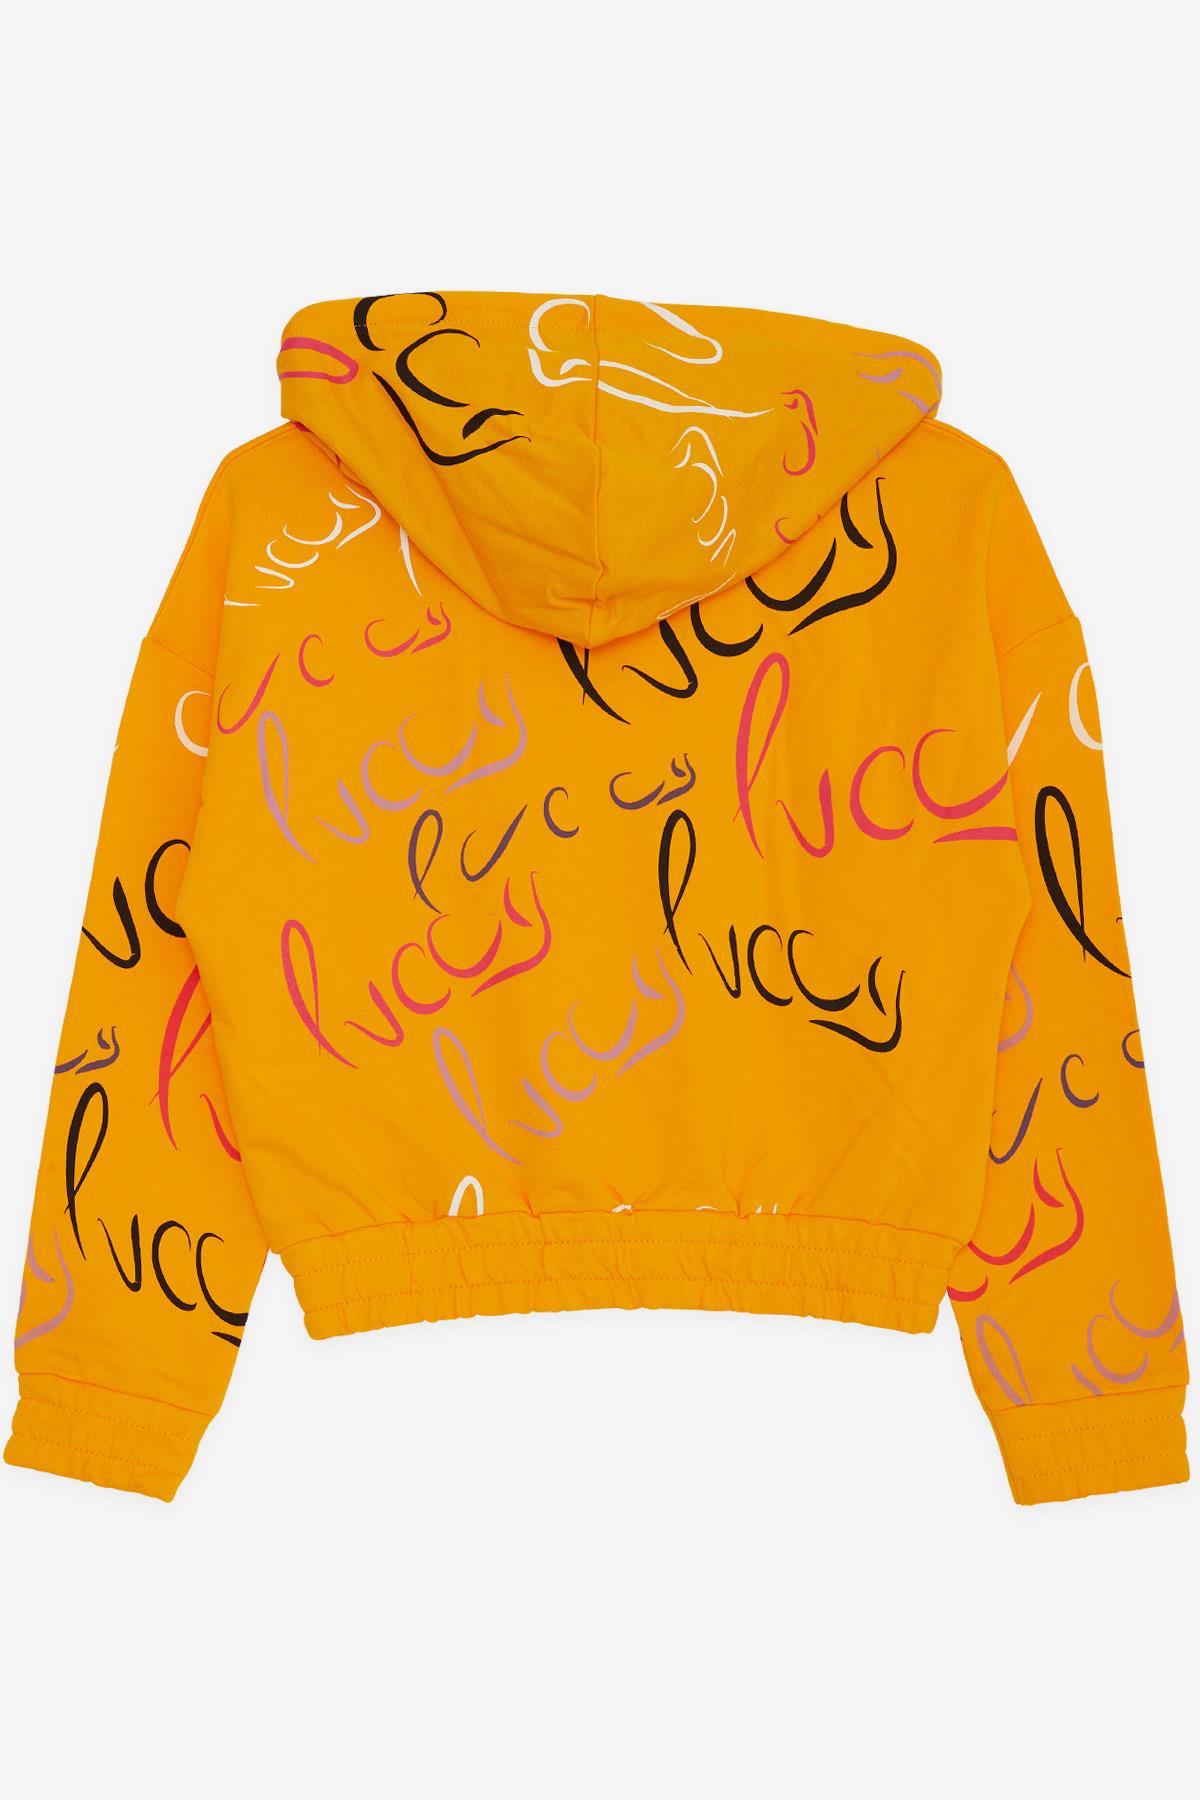 Kız Çocuk Sweatshirt Luccy Renkli Yazı Desenli Kapüşonlu Hardal Sarı 7 Yaş  - Sıcacık Modeller | Breeze